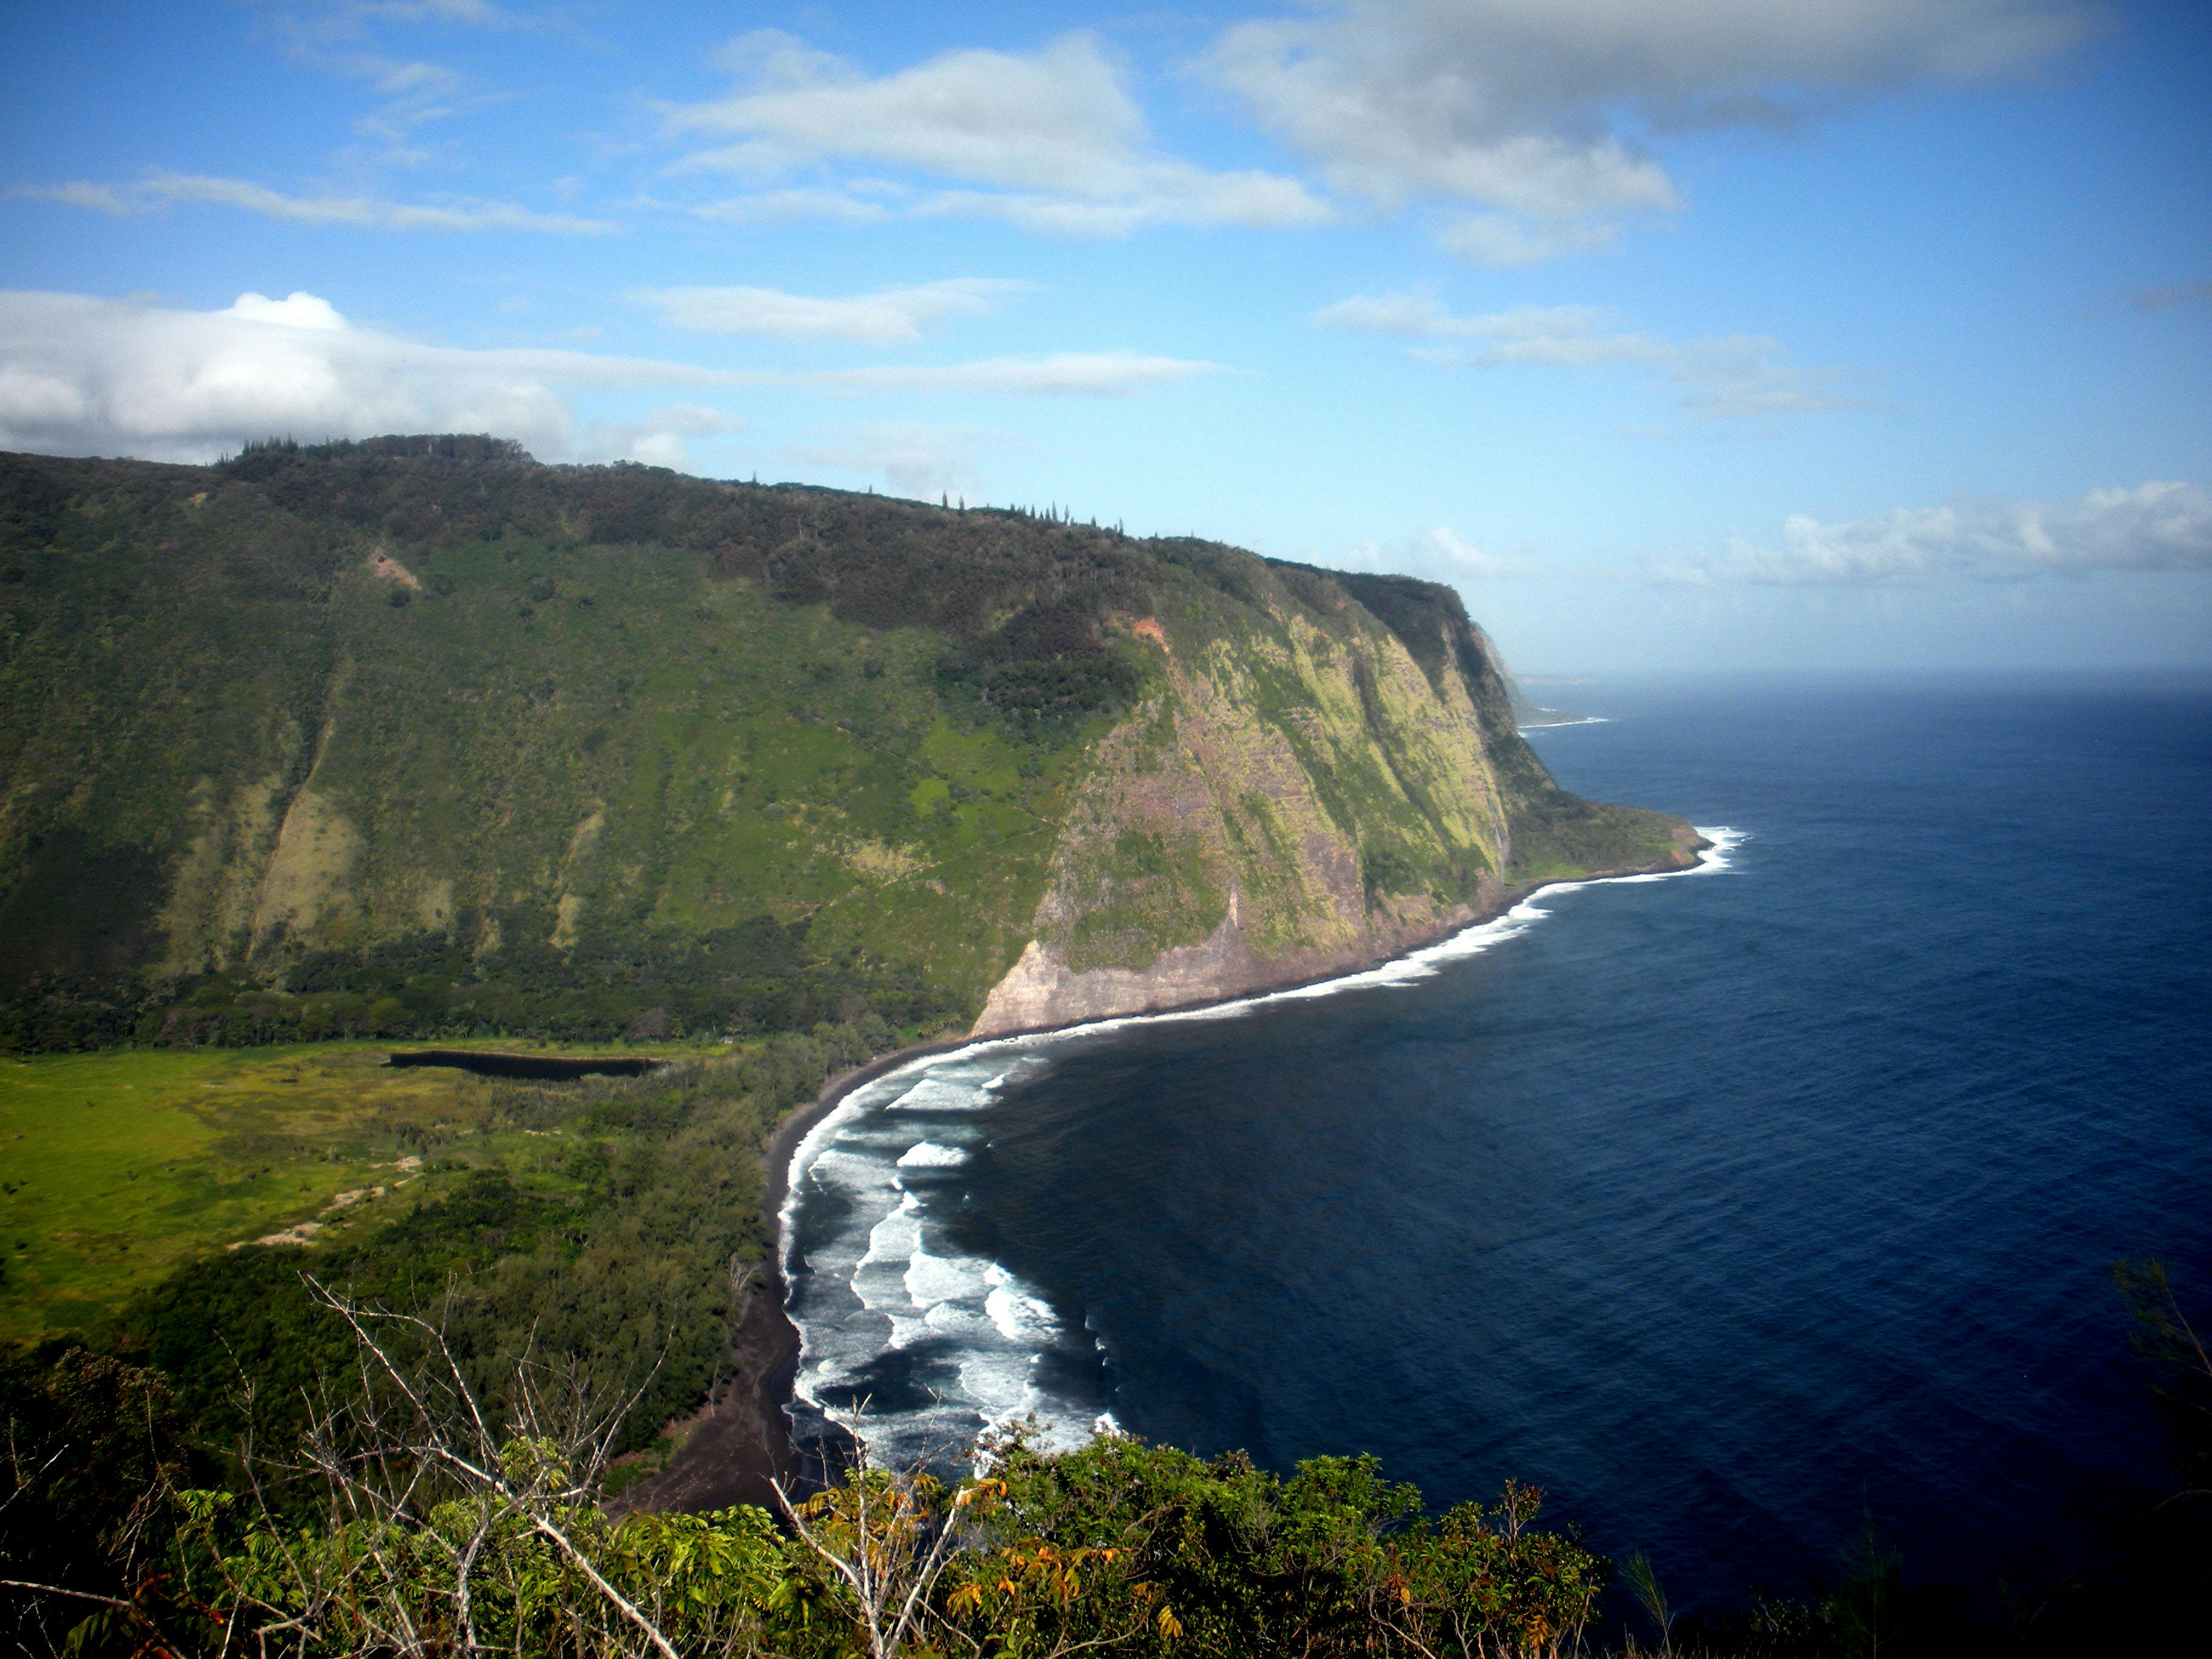 Hawaii Tax Rebate Delay